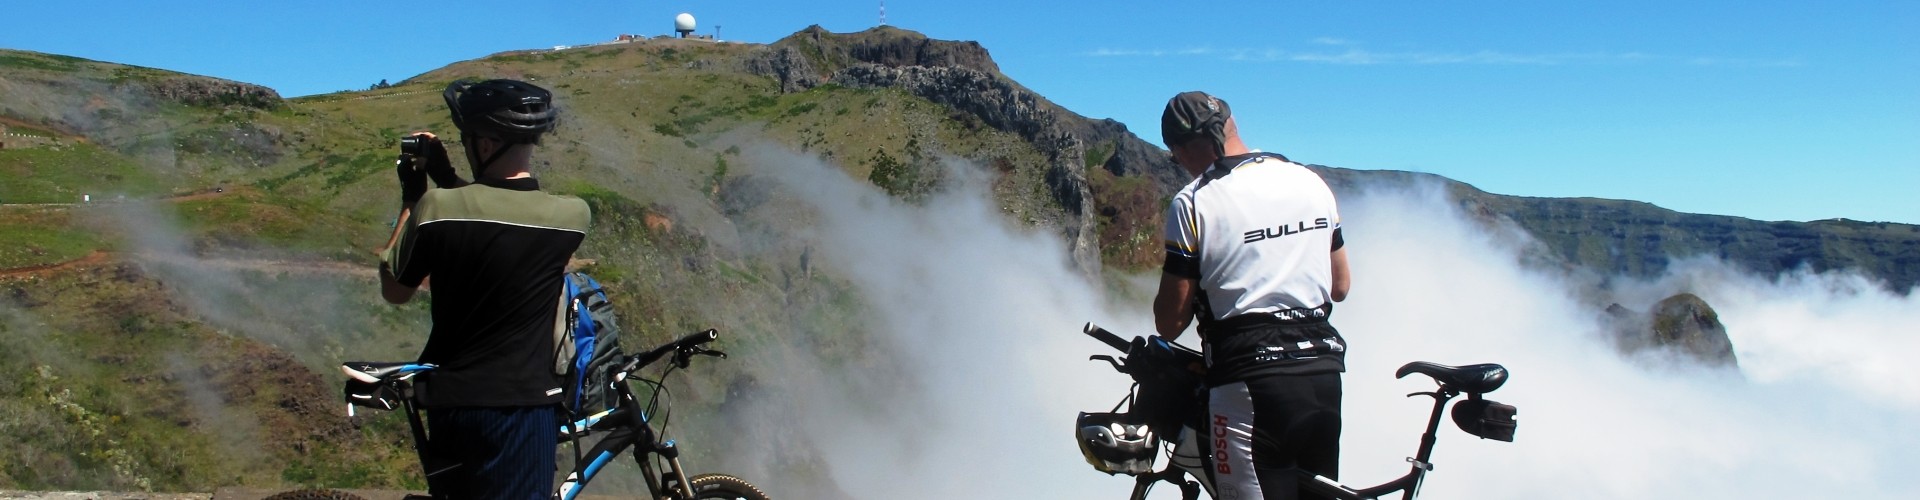 Atop Pico do Arieiro Bike Tour in Madeira